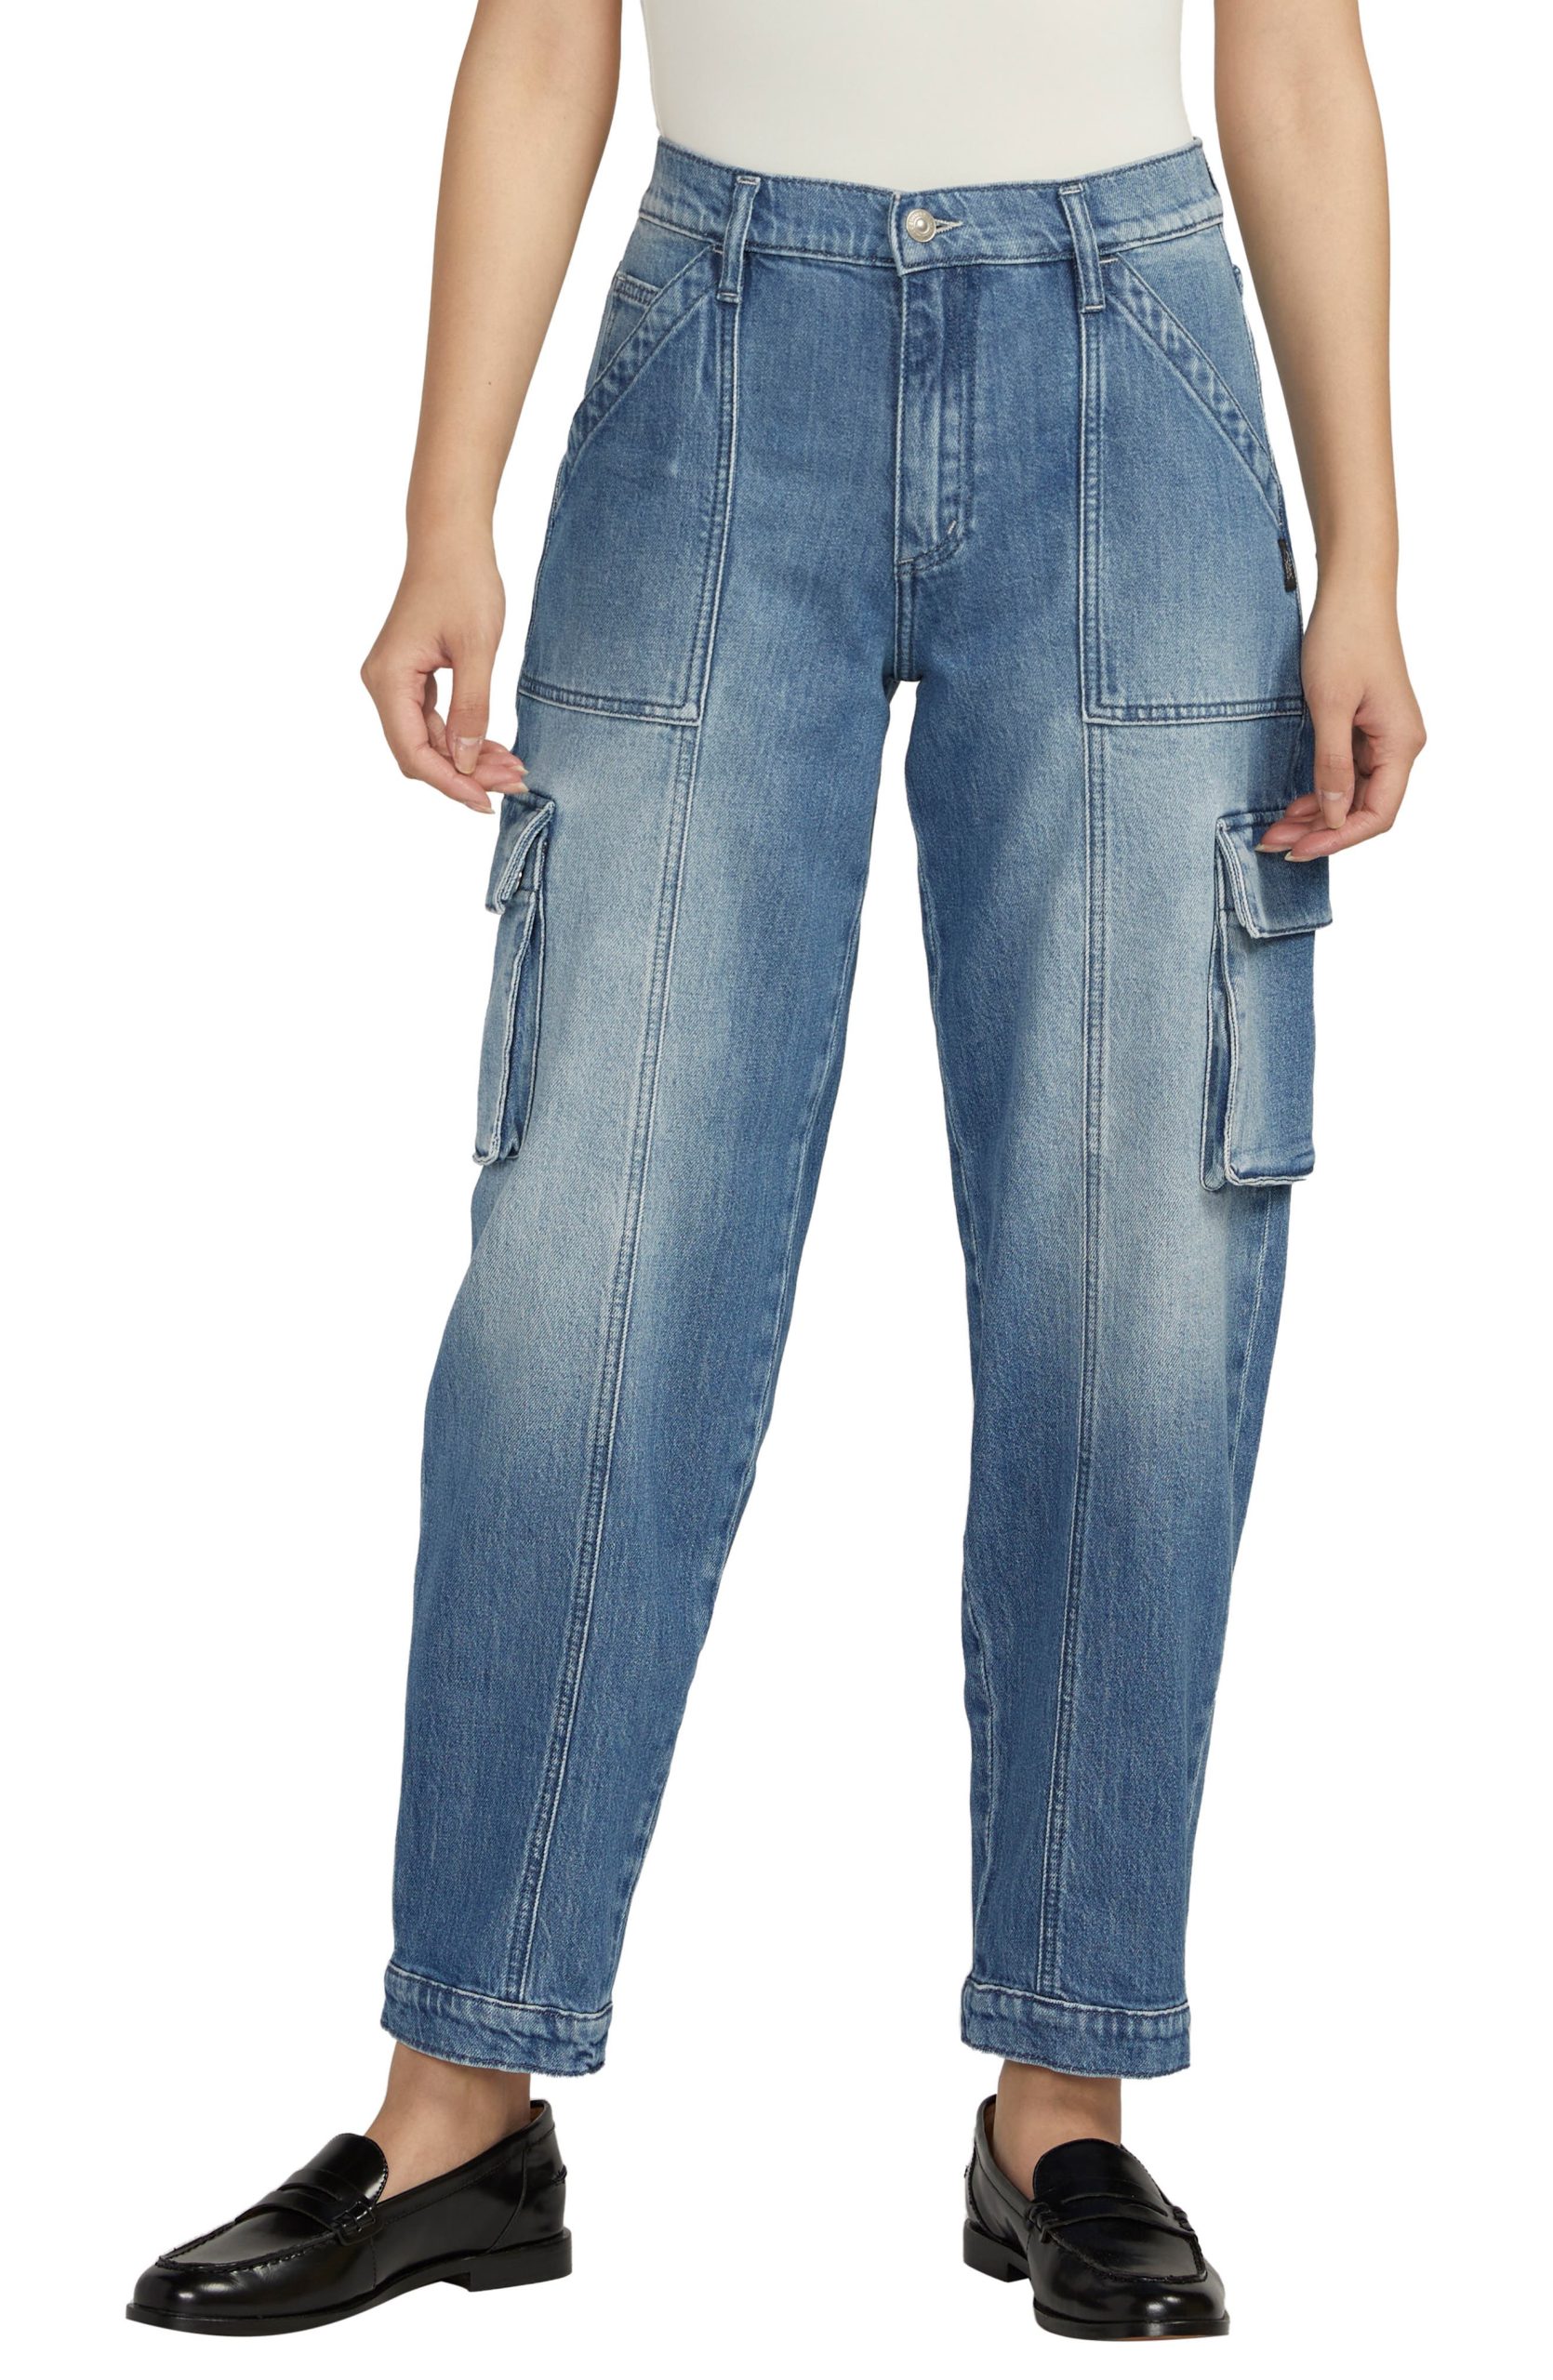 Nordstrom rack mother jeans